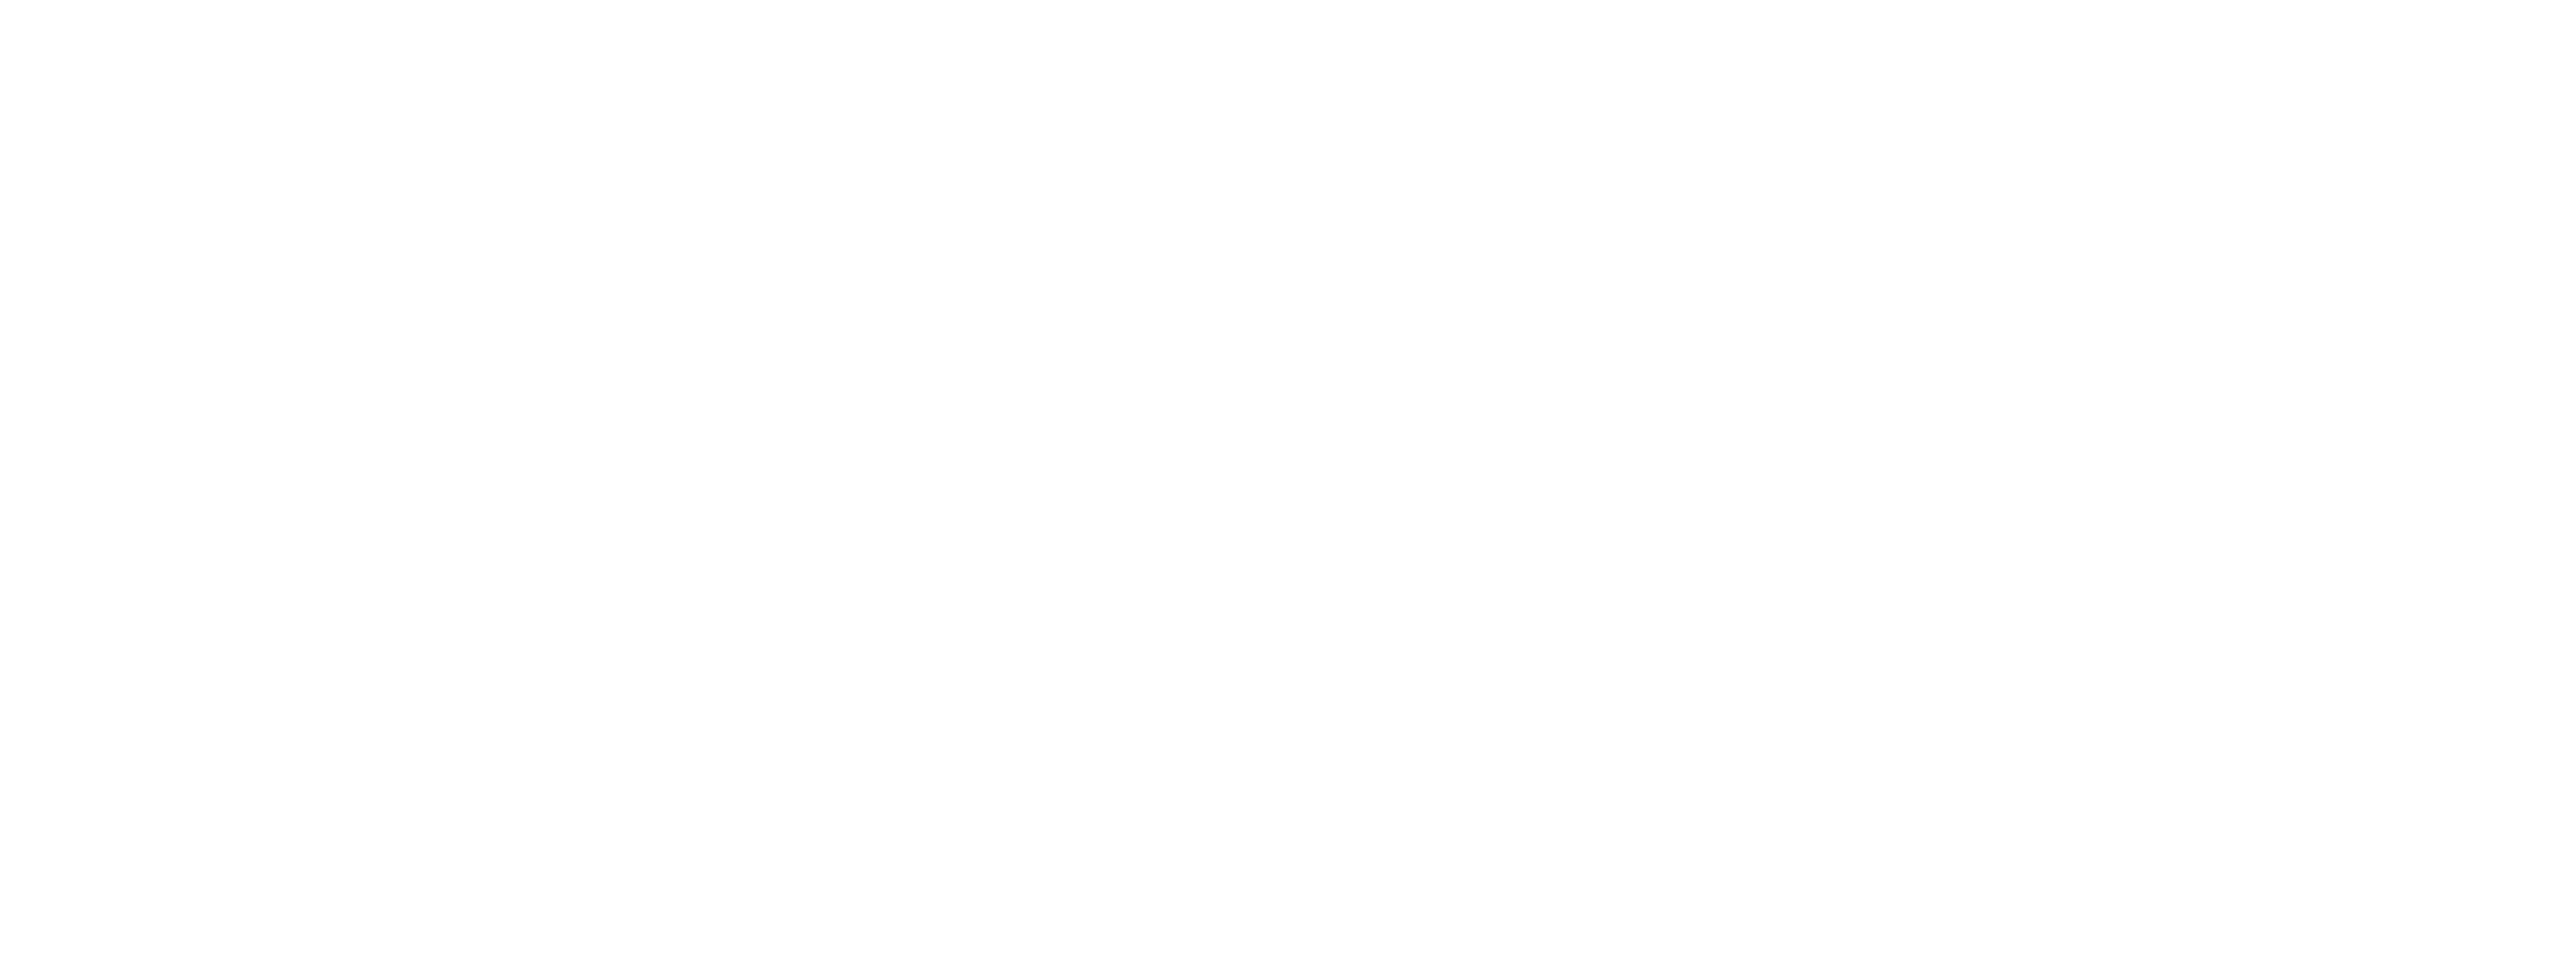 Starlight Baptist